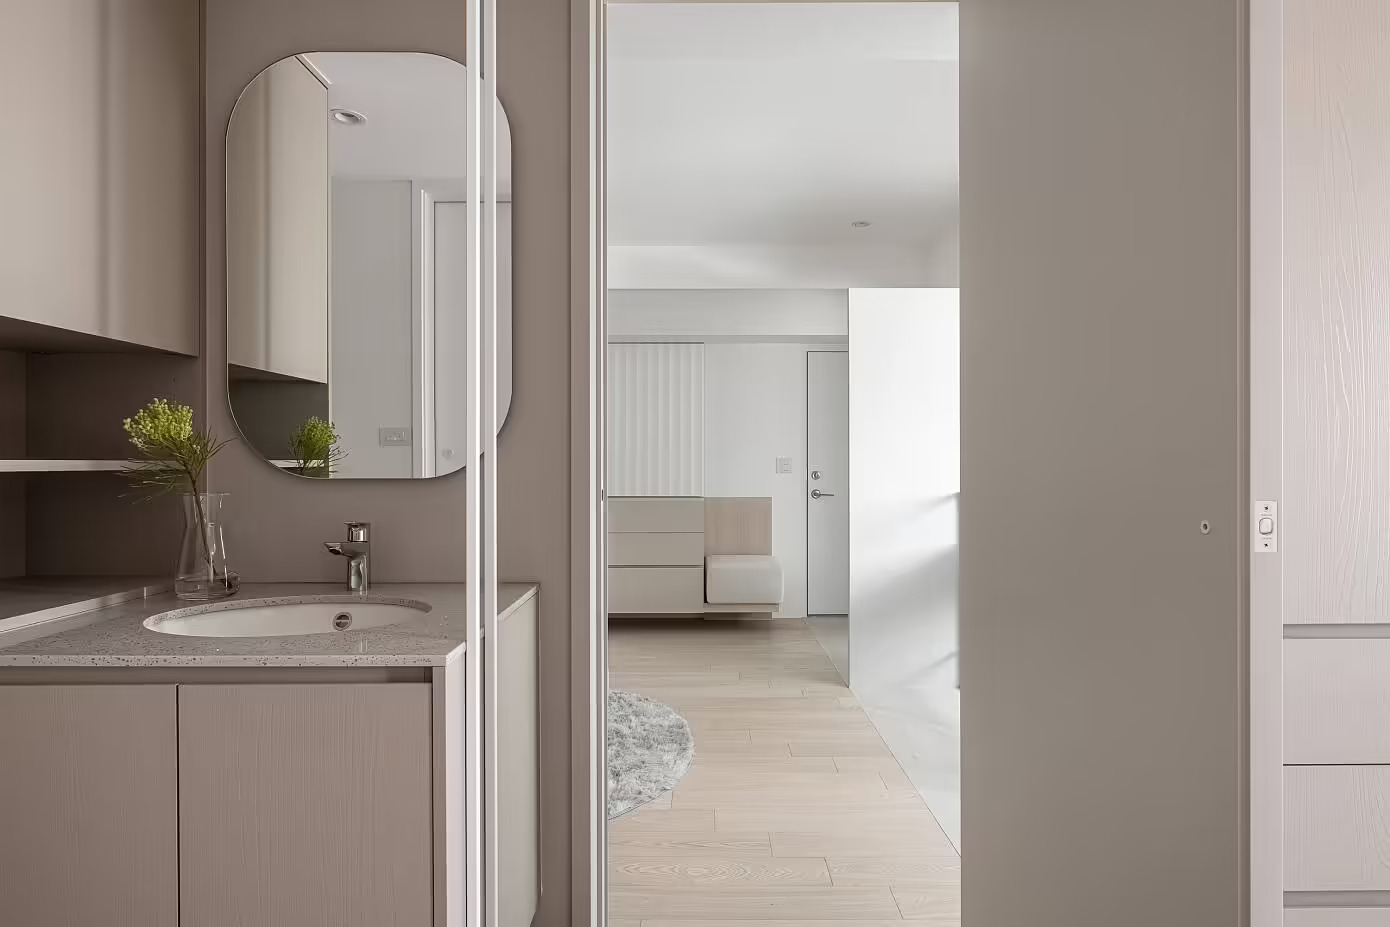 Góc chụp từ phòng tắm cho thấy các NTK rất chú trọng đầu tư hệ thống lưu trữ kết hợp nội thất để chủ nhân có thể sắp xếp đồ đạc hiệu quả mà hoàn toàn không gây rối mắt hay chiếm nhiều không gian trong căn hộ tối giản.